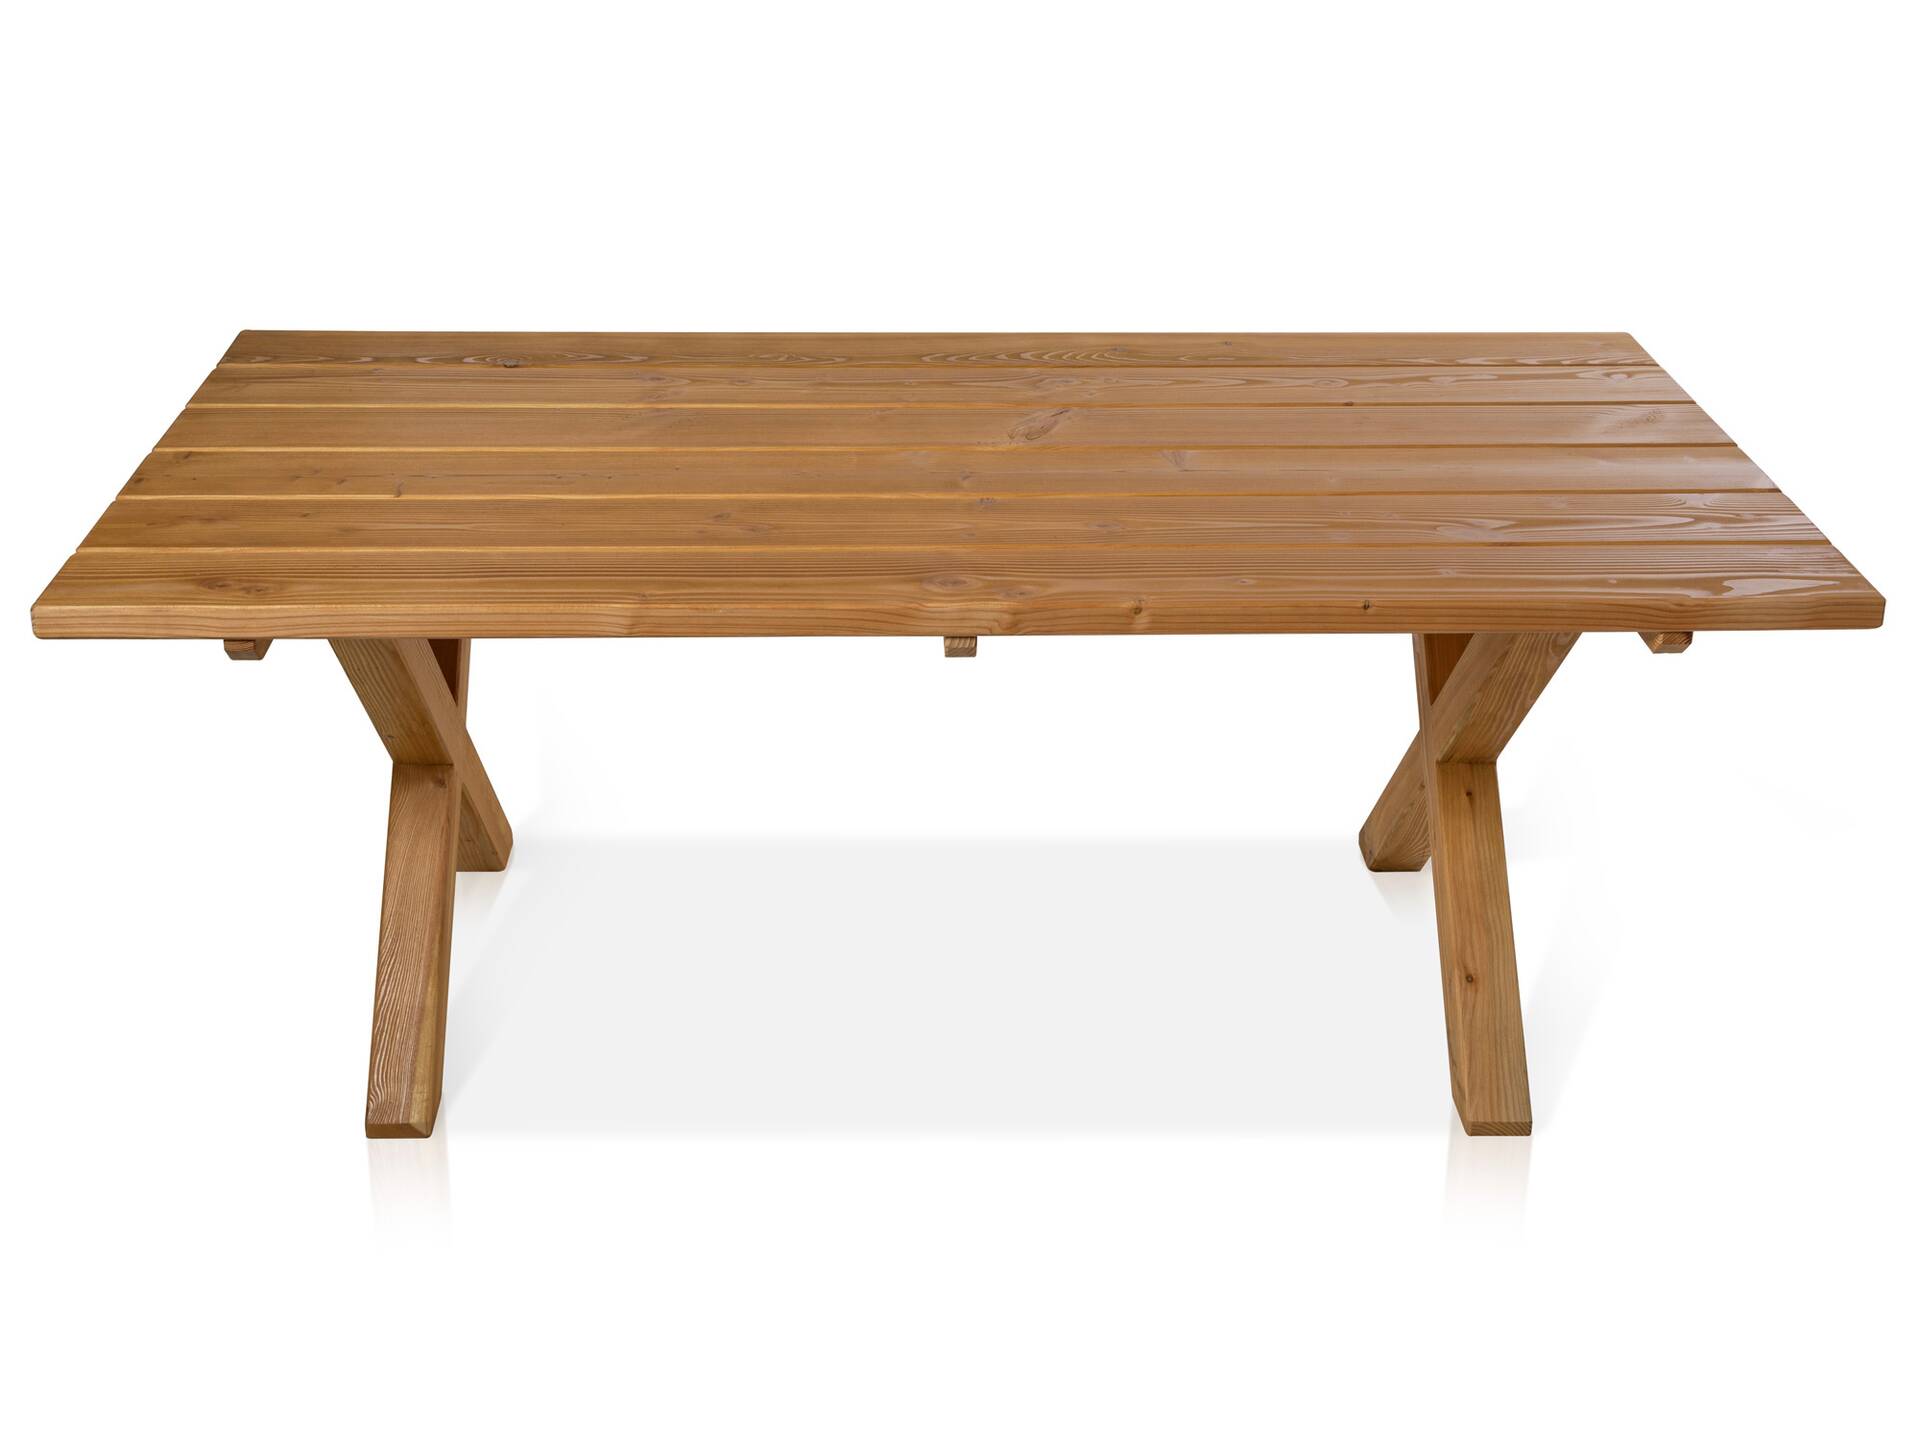 CANCUN Esstisch / Gartentisch mit X-Beinen, Material Massivholz, Lärche natur 200 x 100 cm